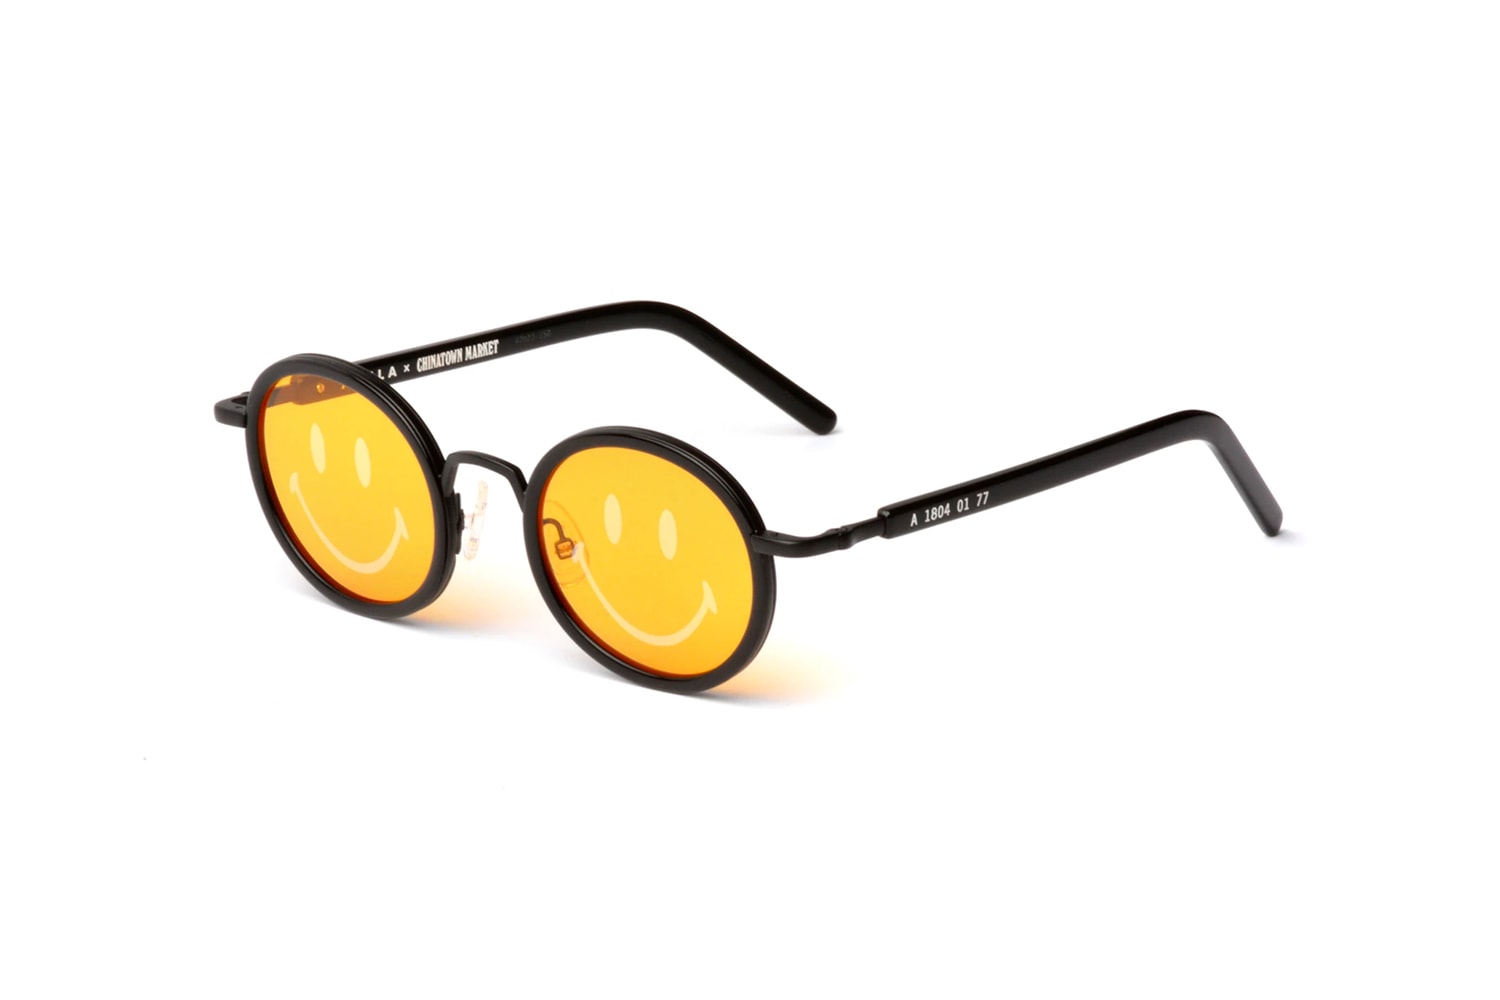 스마일리 페이스 렌즈, 차이나타운 마켓 x 아킬라 선글라스 협업 Ethos 컬렉션